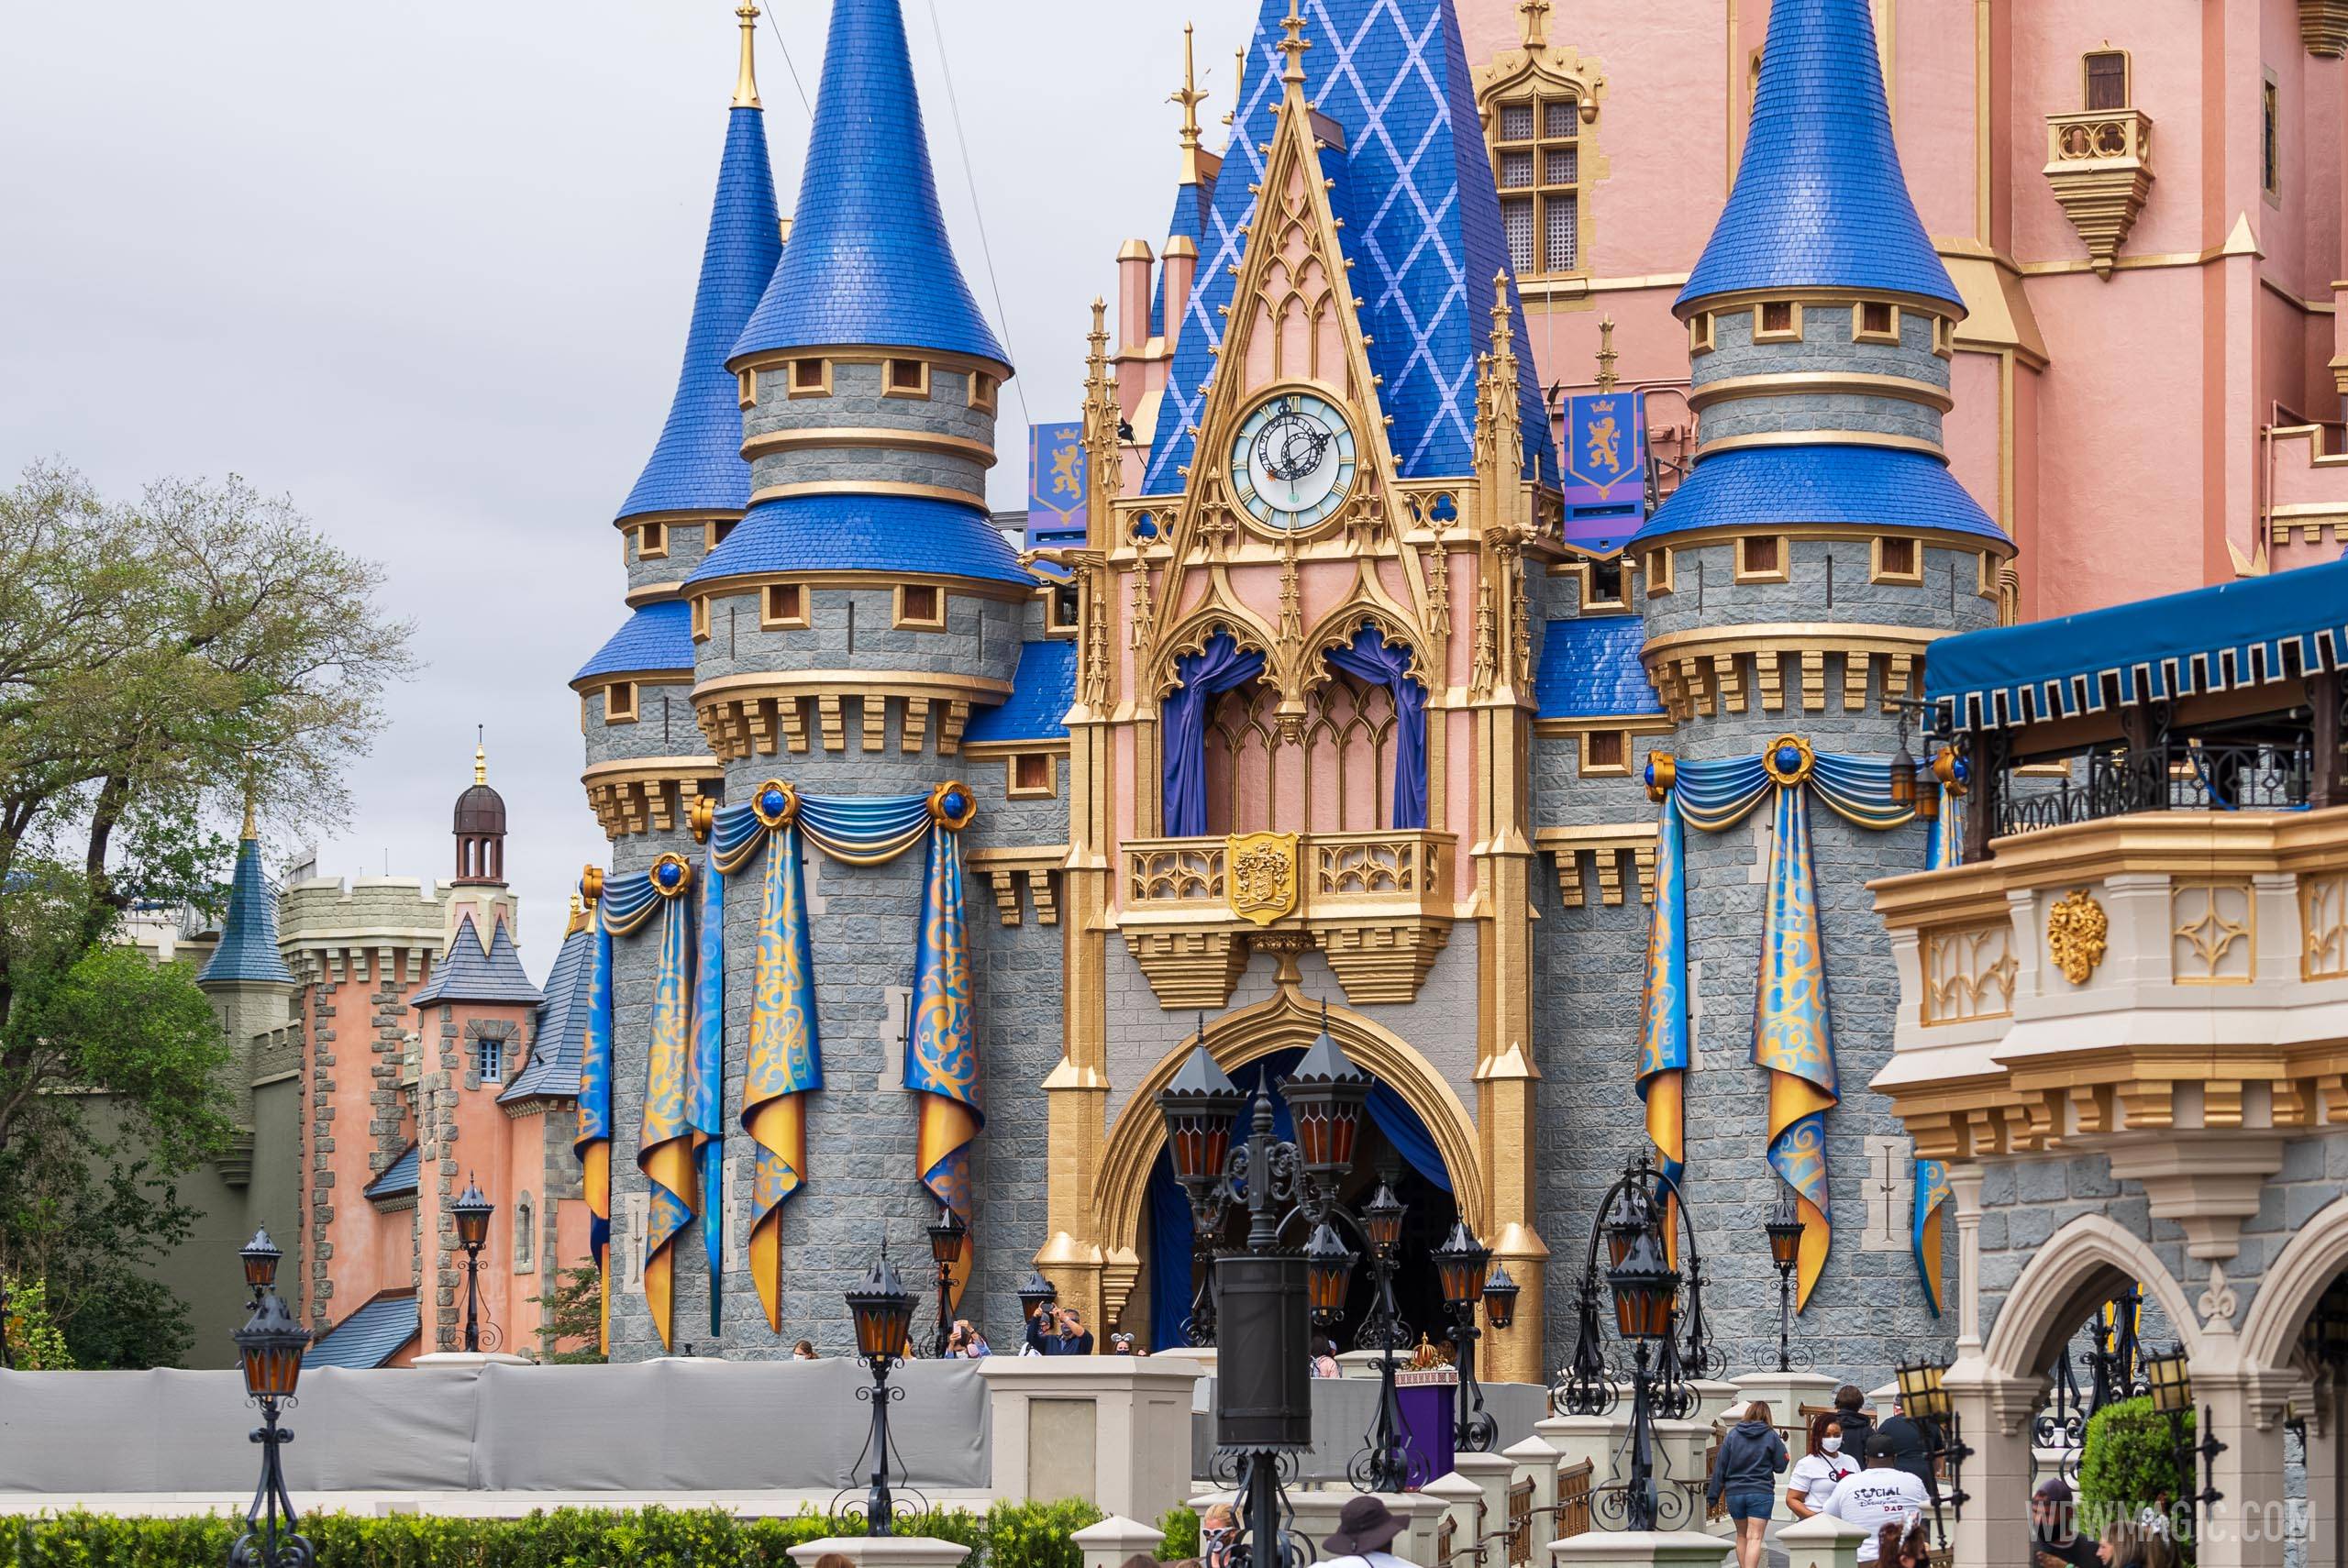 50th anniversary Cinderella Castle additions - April 1 2021